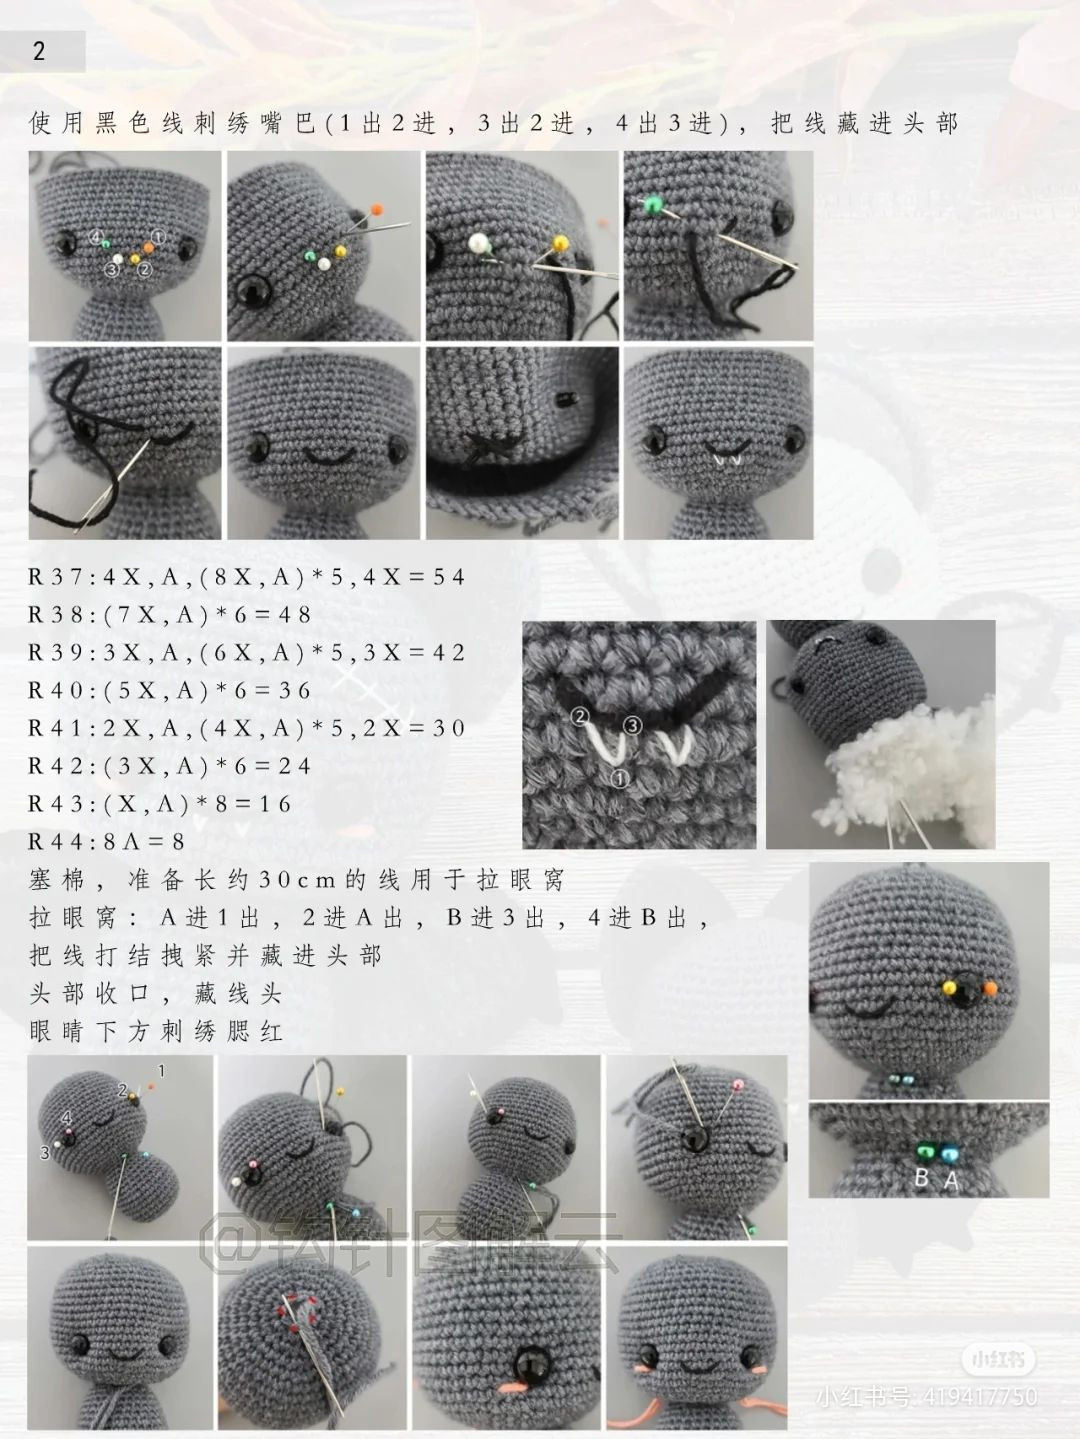 Cute little bat crochet pattern